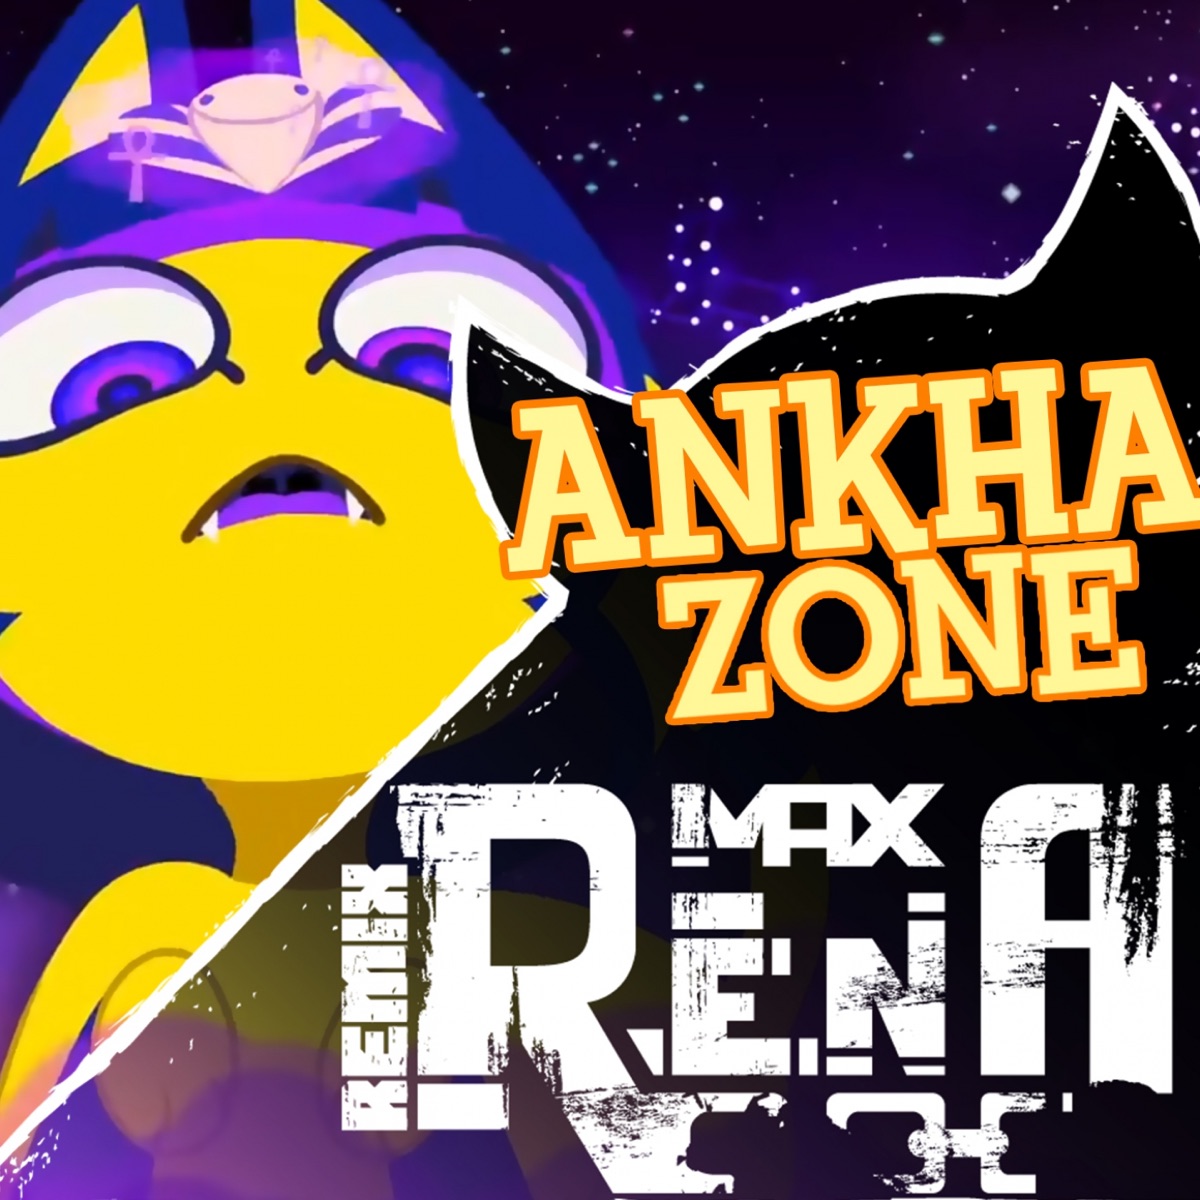 Ankha zone vid